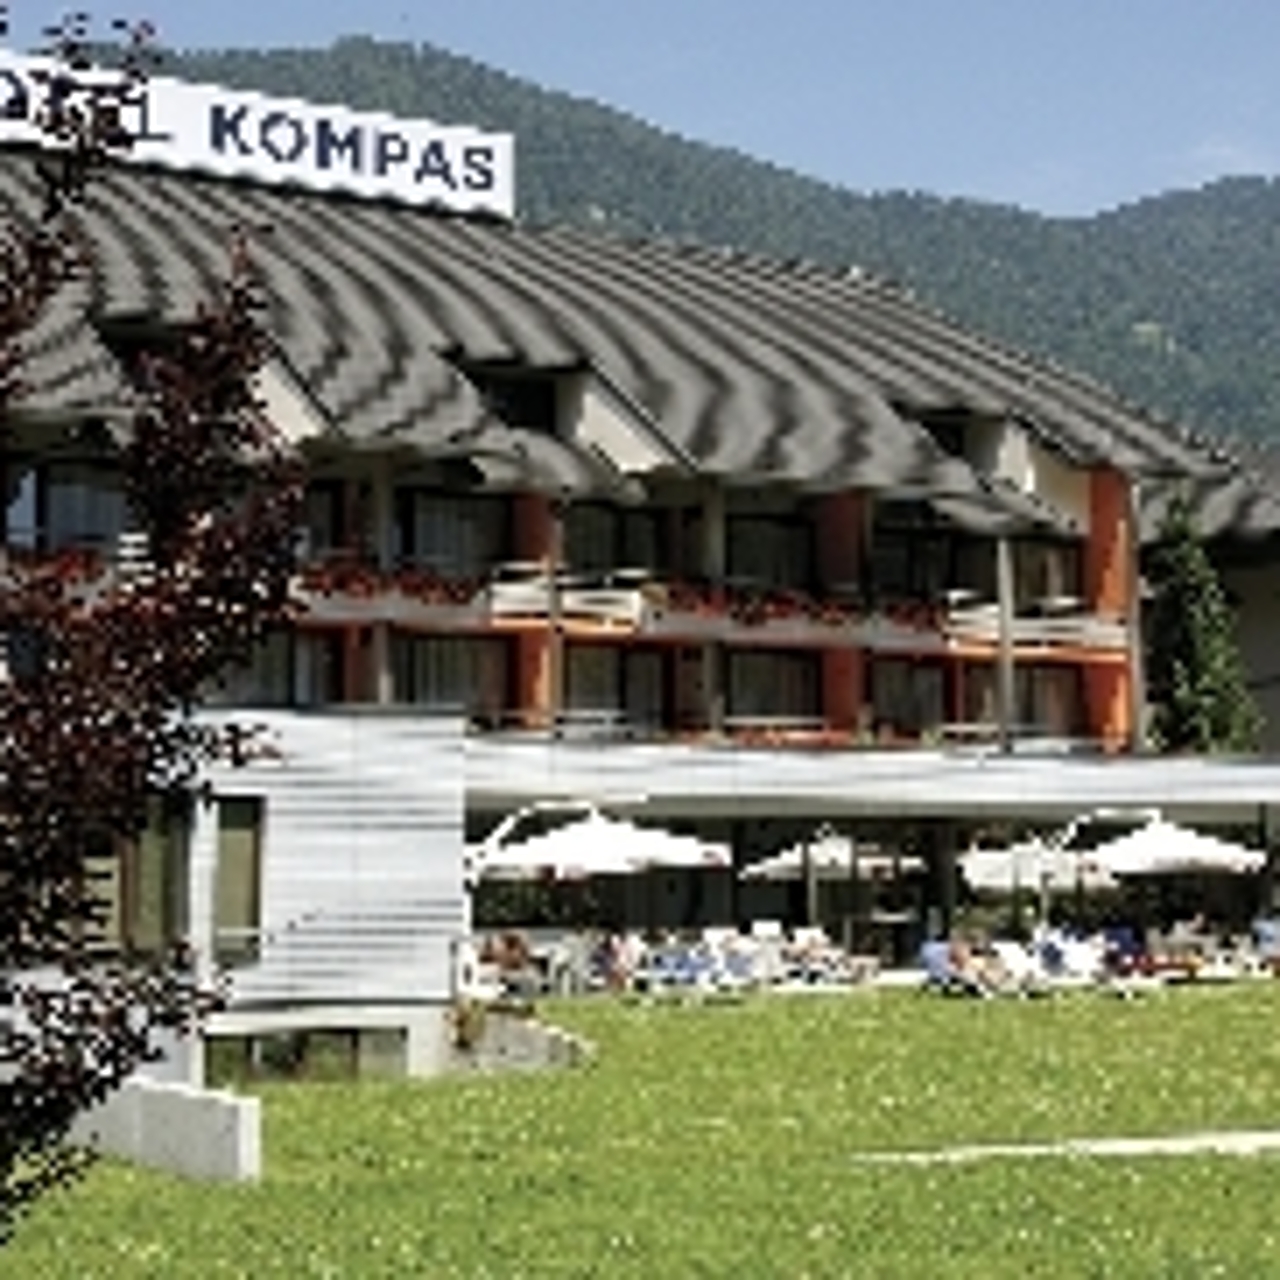 Hotel Kompas - 4 HRS star hotel in Kranjska gora (Kranjska Gora)